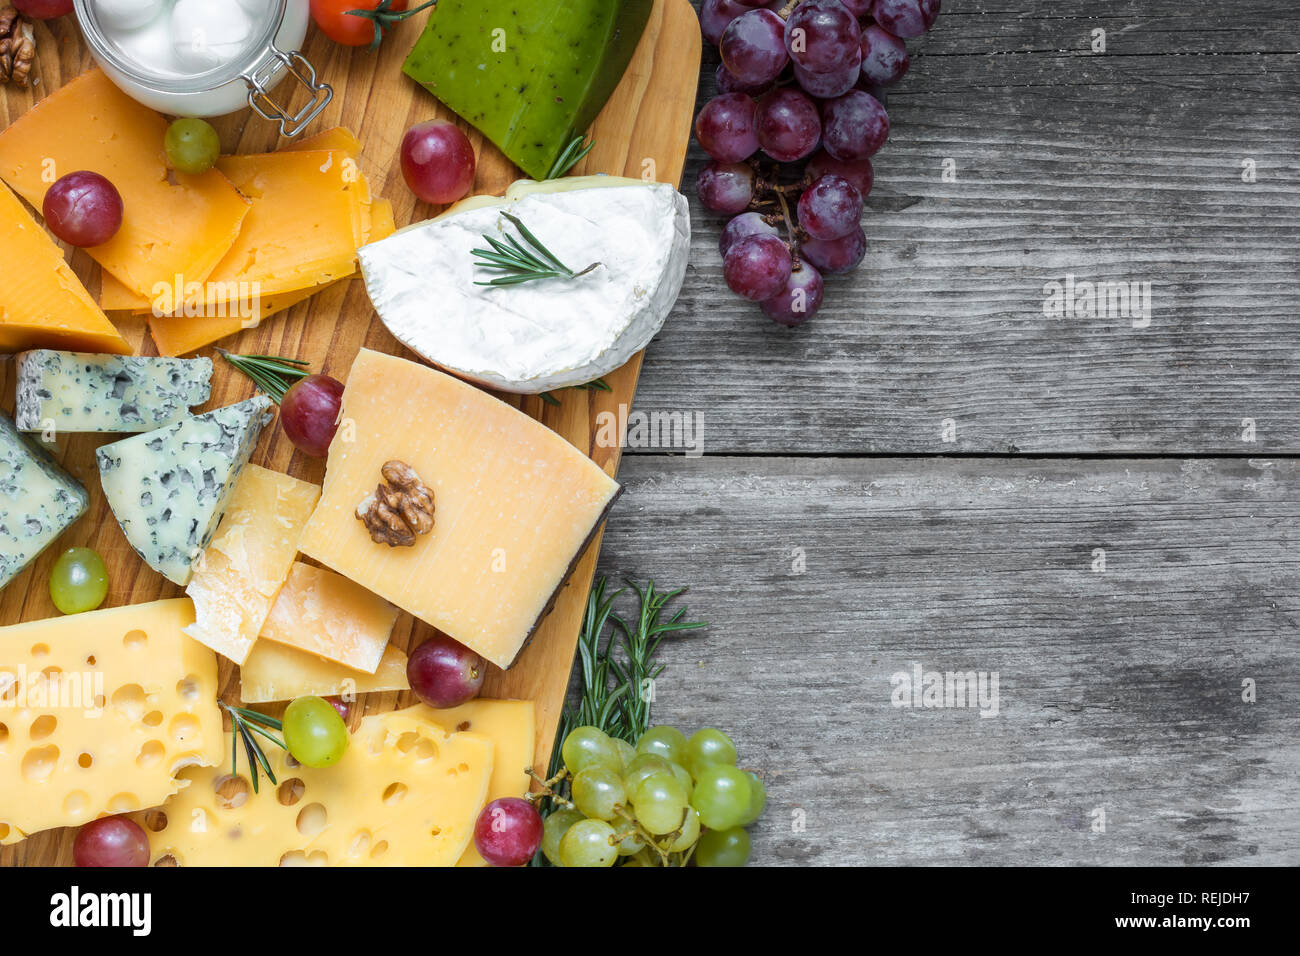 Différents types de fromage sur une planche à découper avec les raisins et les noix sur la table en bois rustique, vue supérieure avec copie espace Banque D'Images